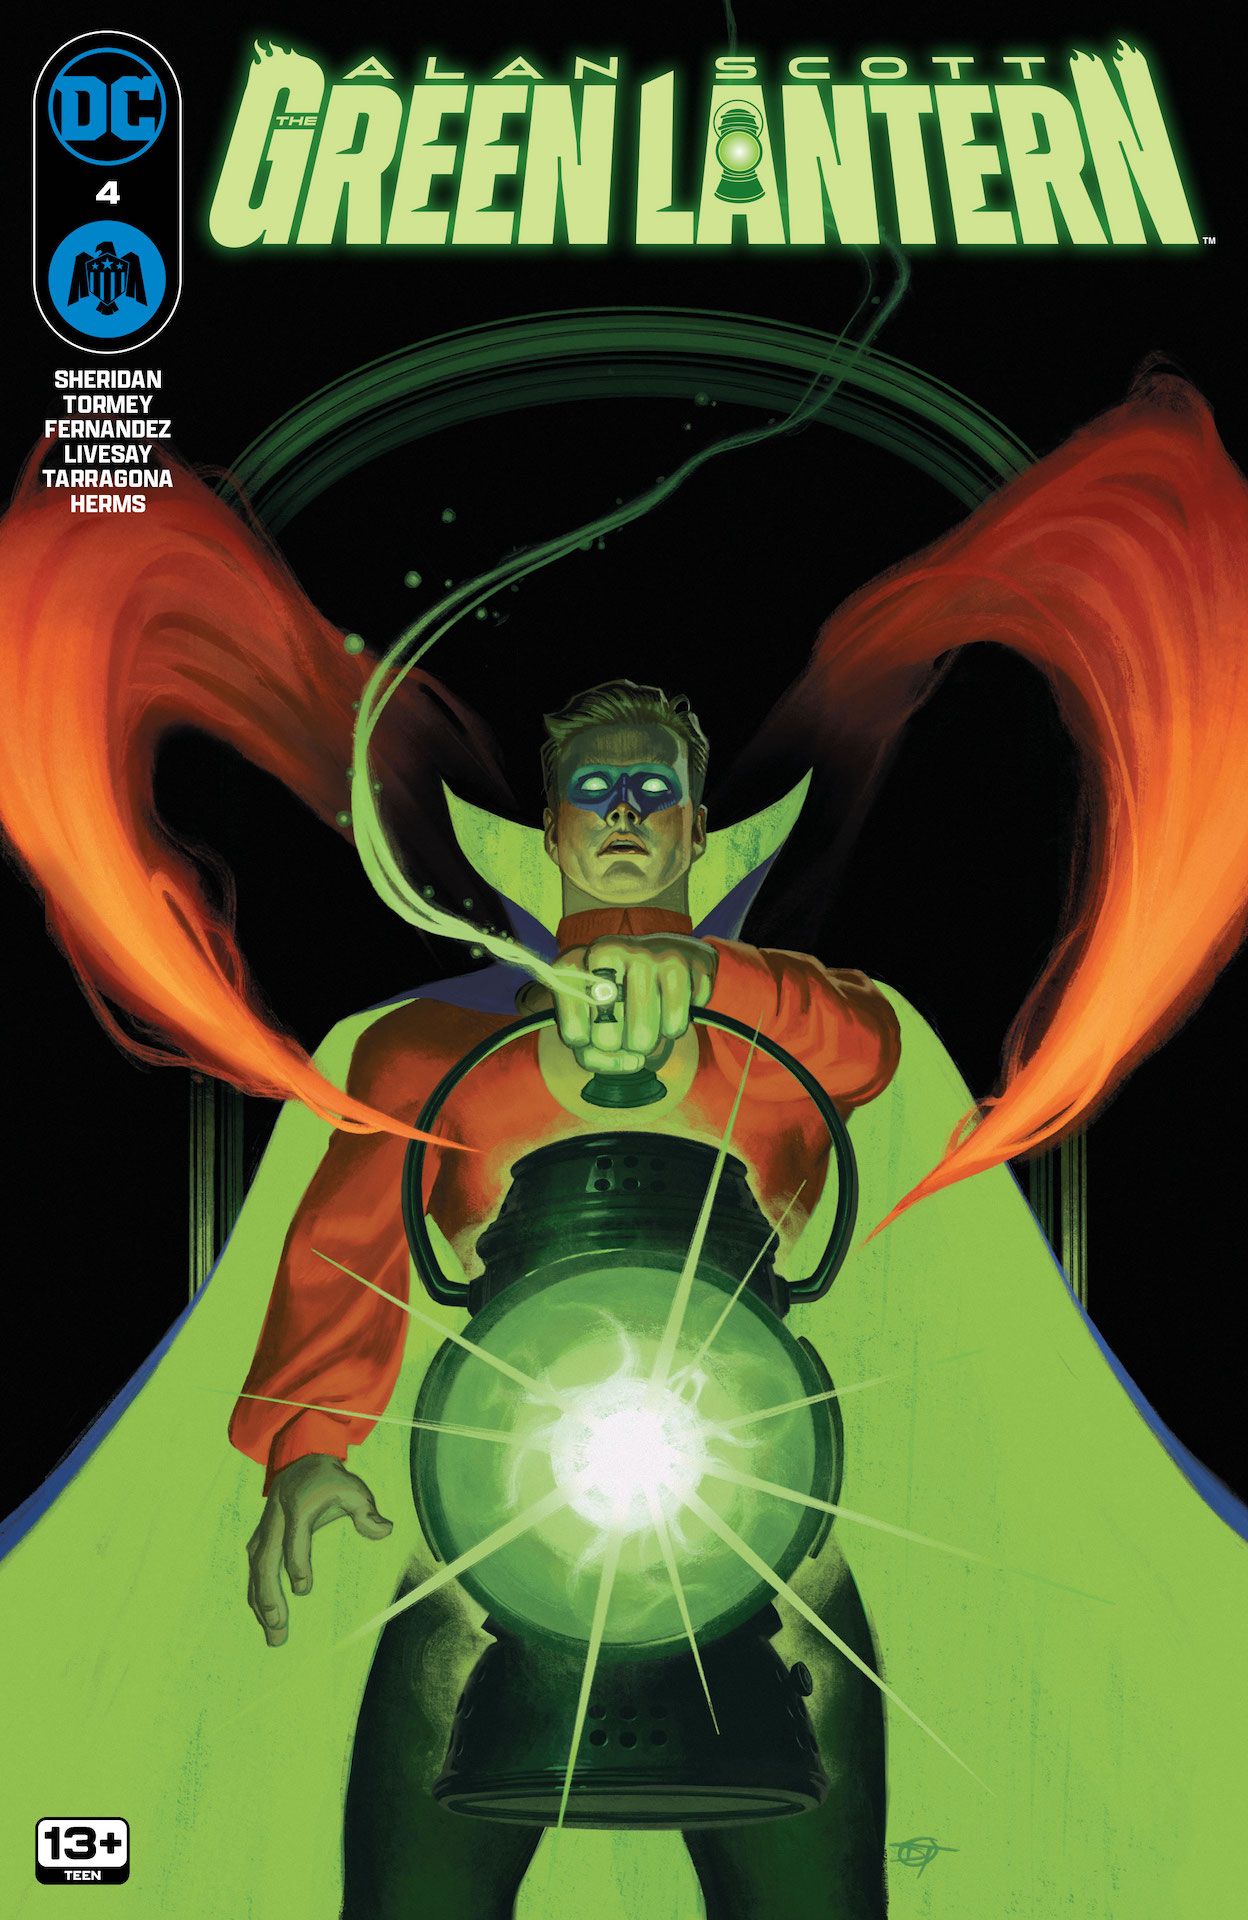 DC Preview: Alan Scott: The Green Lantern #4